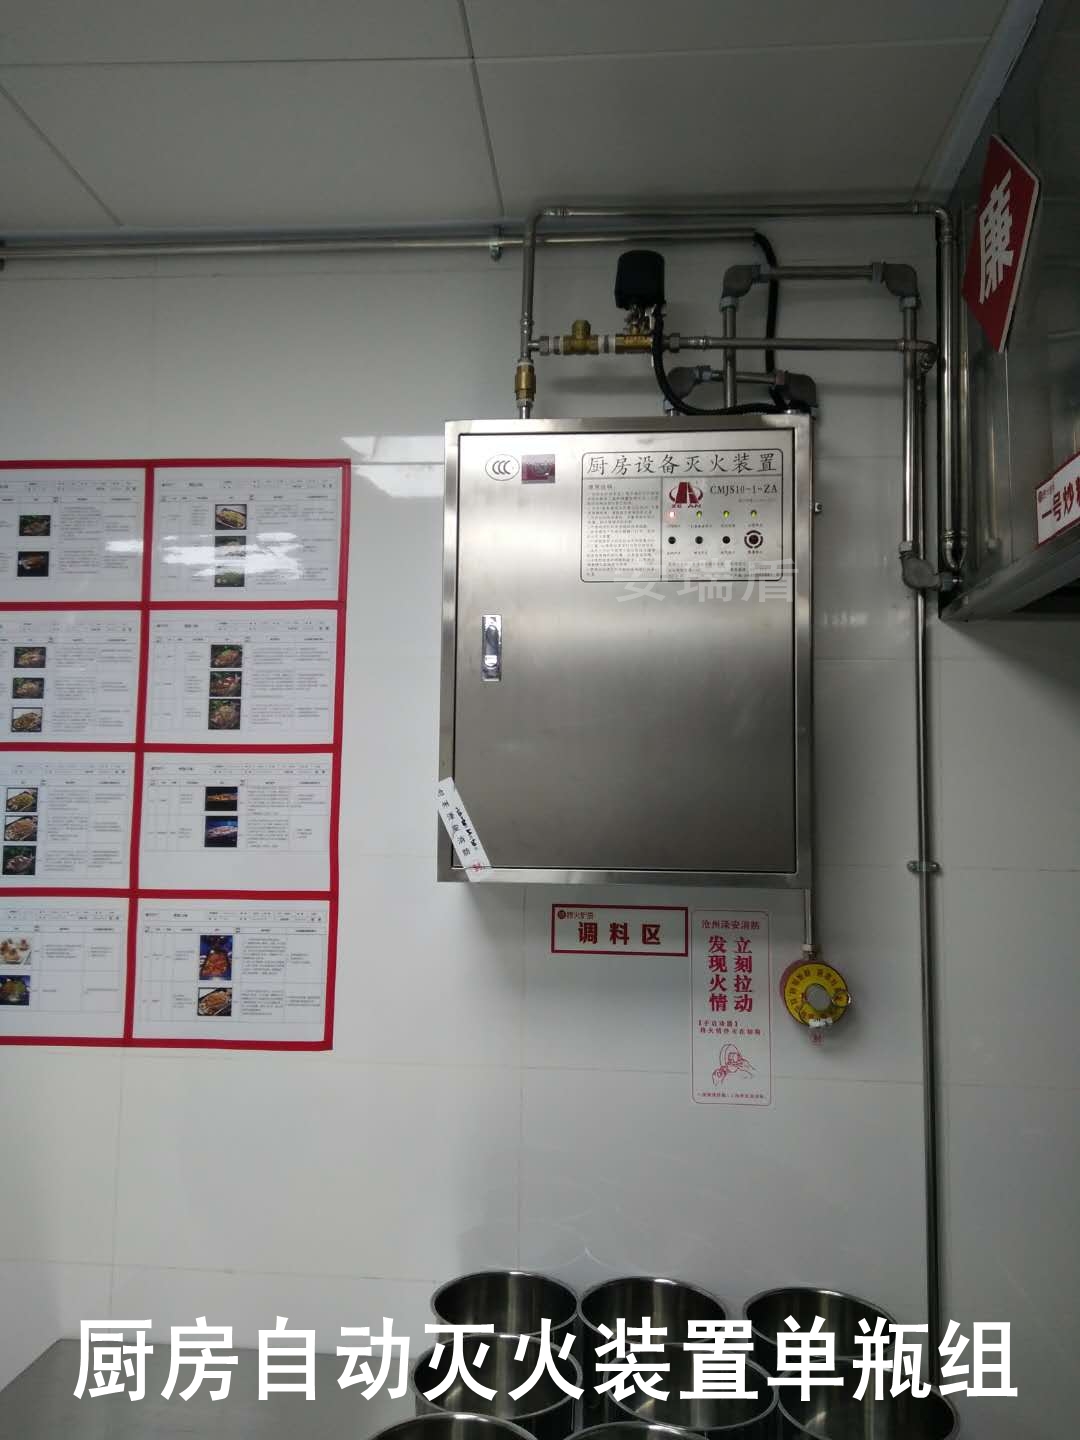 北京-北京成仪路快餐操作间厨房自动灭火装置安装